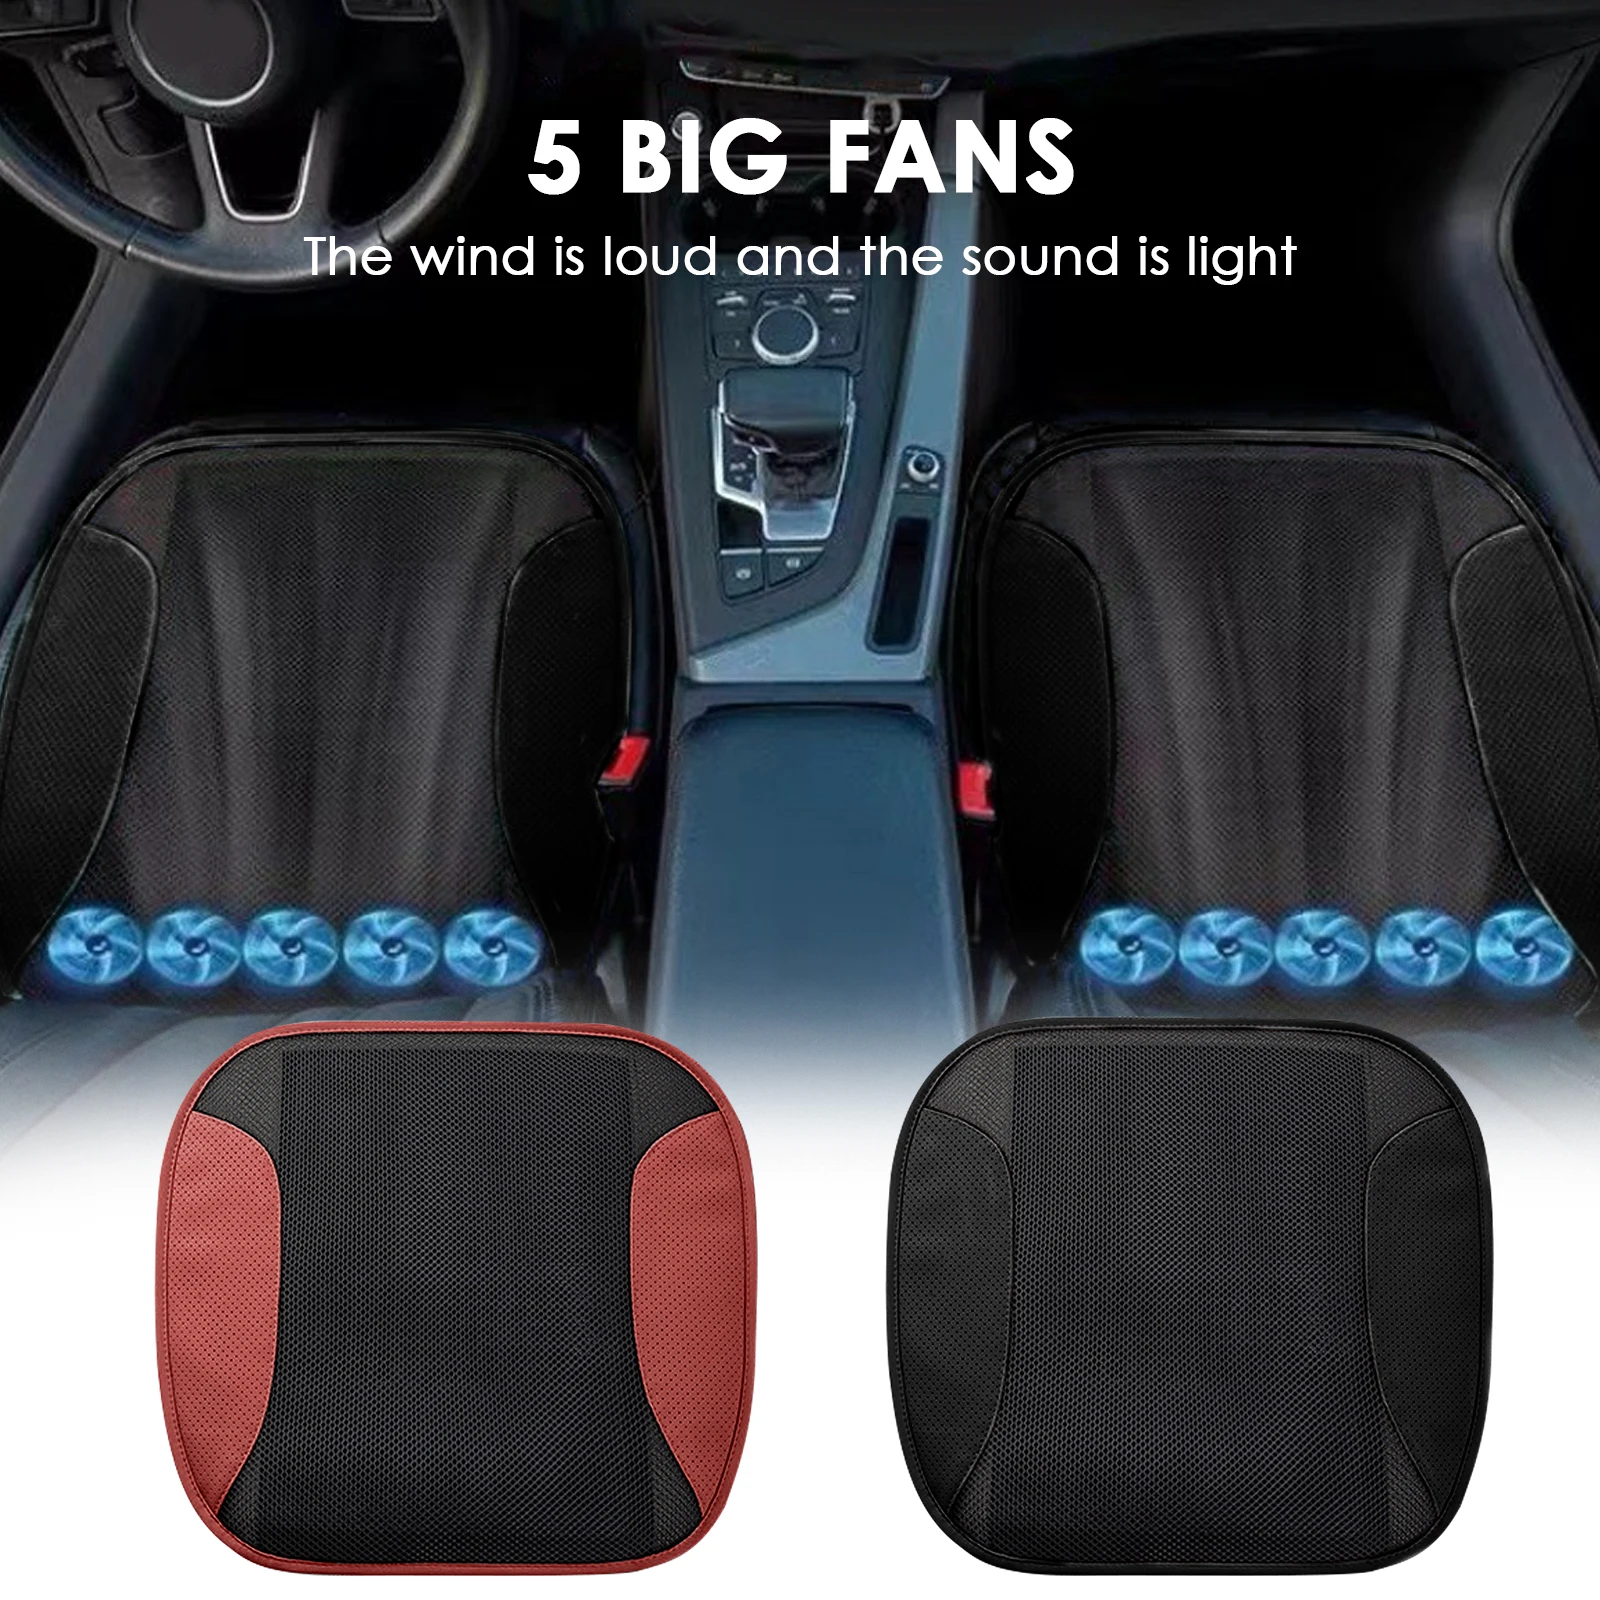 https://ae01.alicdn.com/kf/S597933db58a04c768f17bd333abbc5fah/Universal-Cooling-Car-Air-Ventilated-Fan-Cushion-Car-Seat-Pad-Ventilation-Cushion-USB-Car-Summer-Seat.jpg